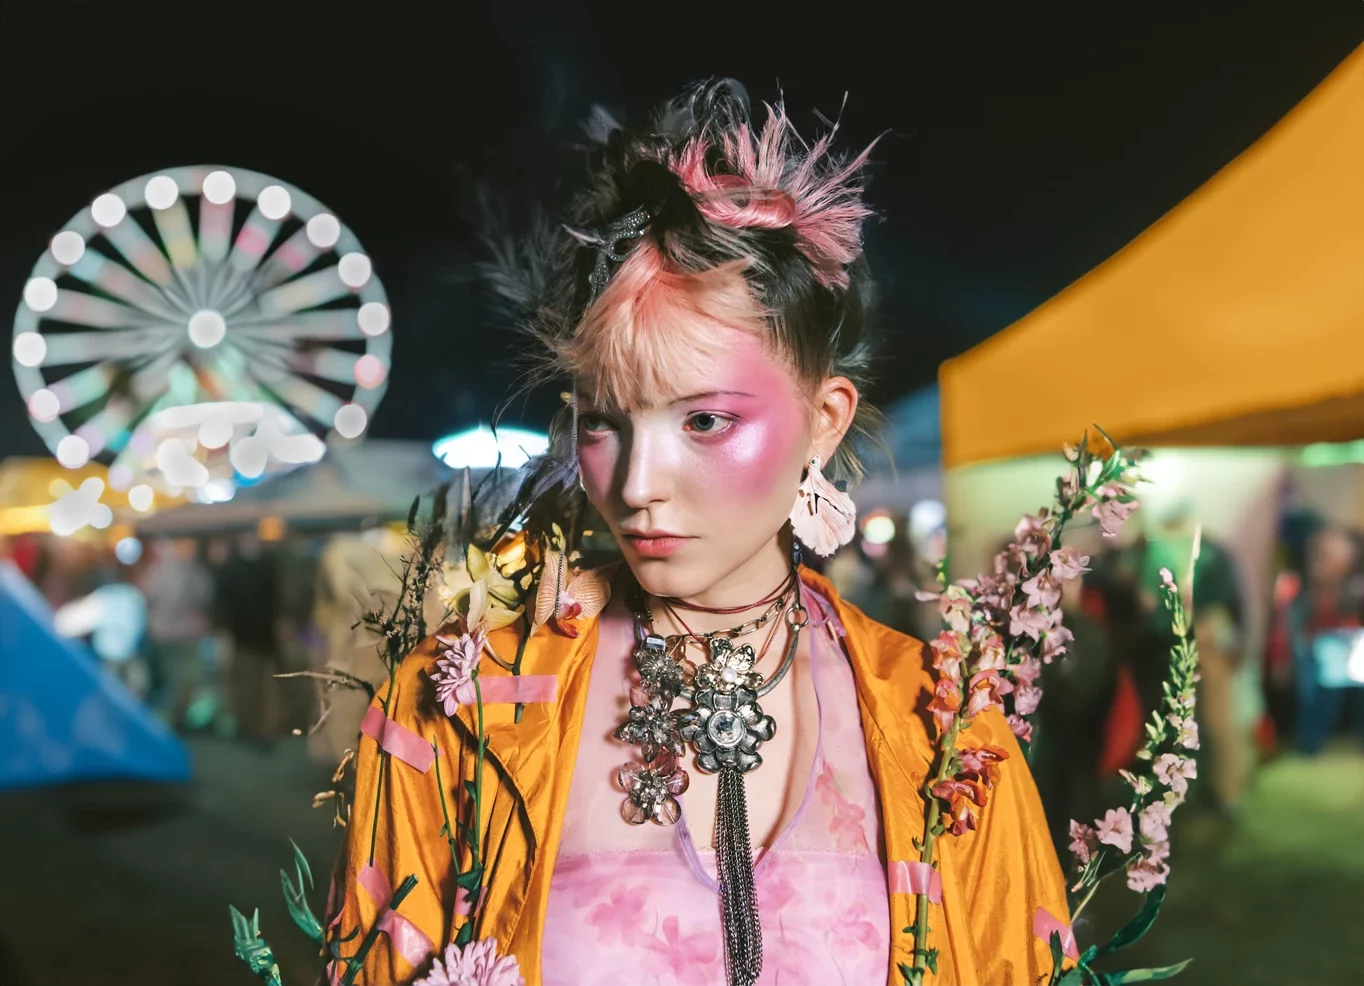 A creator shows their fashion items at a festival.